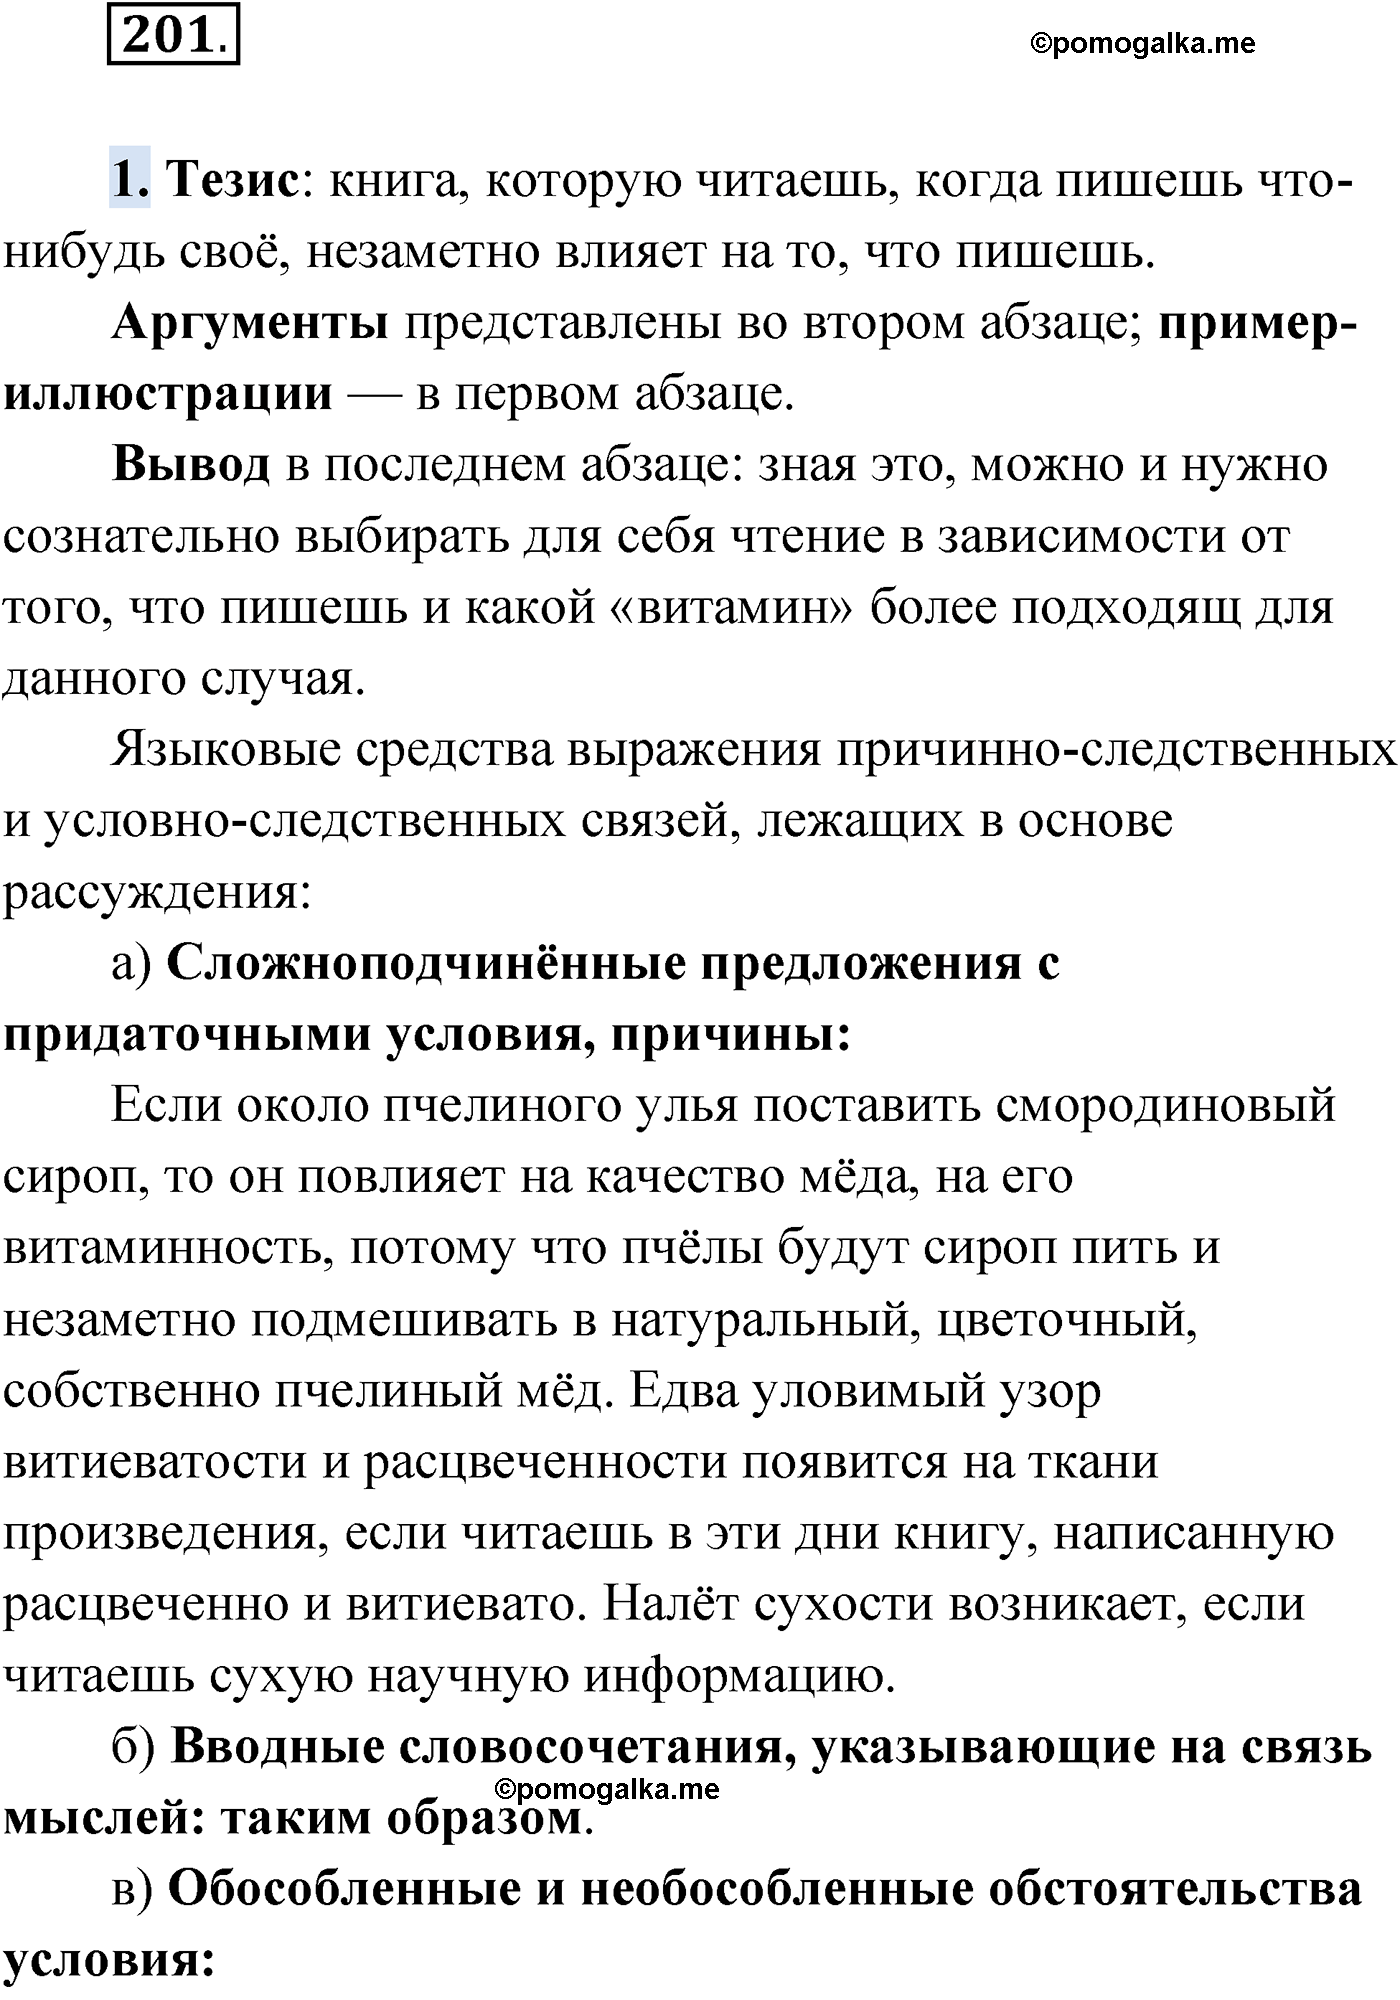 упражнение №201 русский язык 9 класс Мурина 2019 год